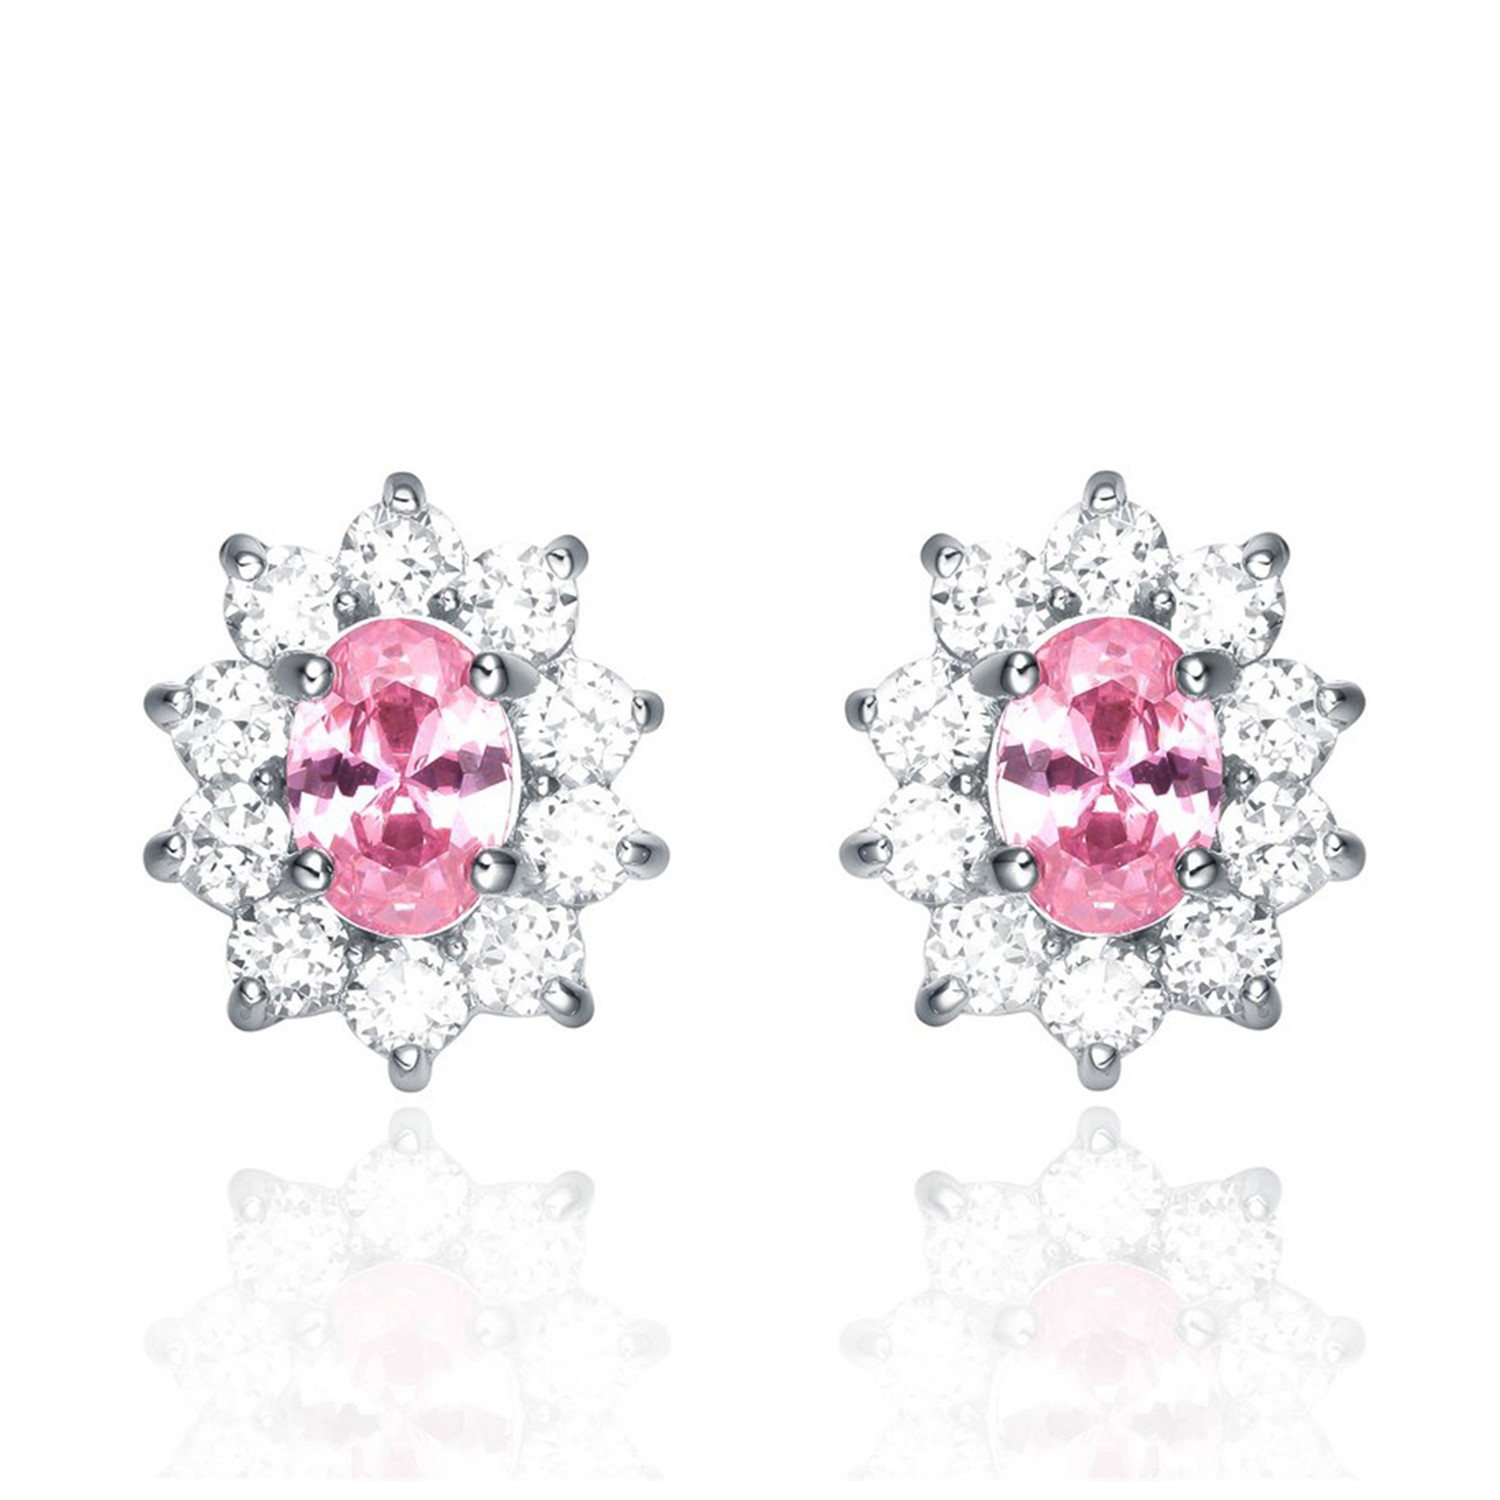  Pink CZ Stud Earrings Flower 925 Sterling Silver Women Bling Jewelry